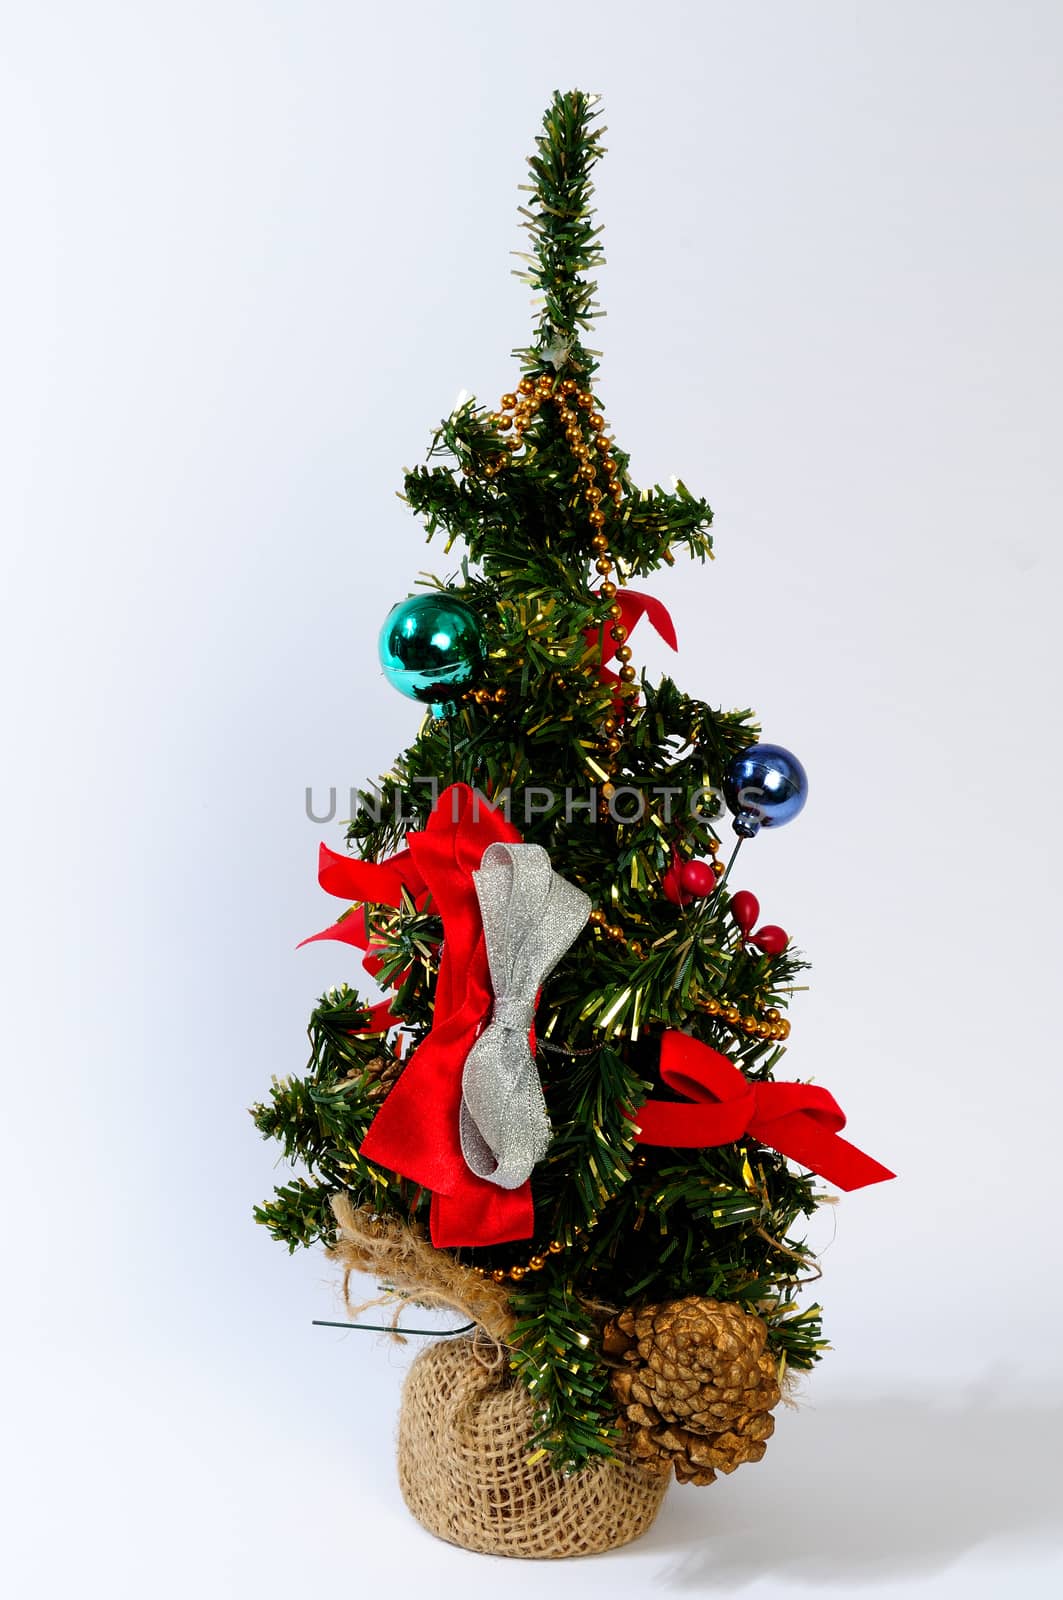 Christmas tree decorations and nativity Christian Catholic isolated on white background.